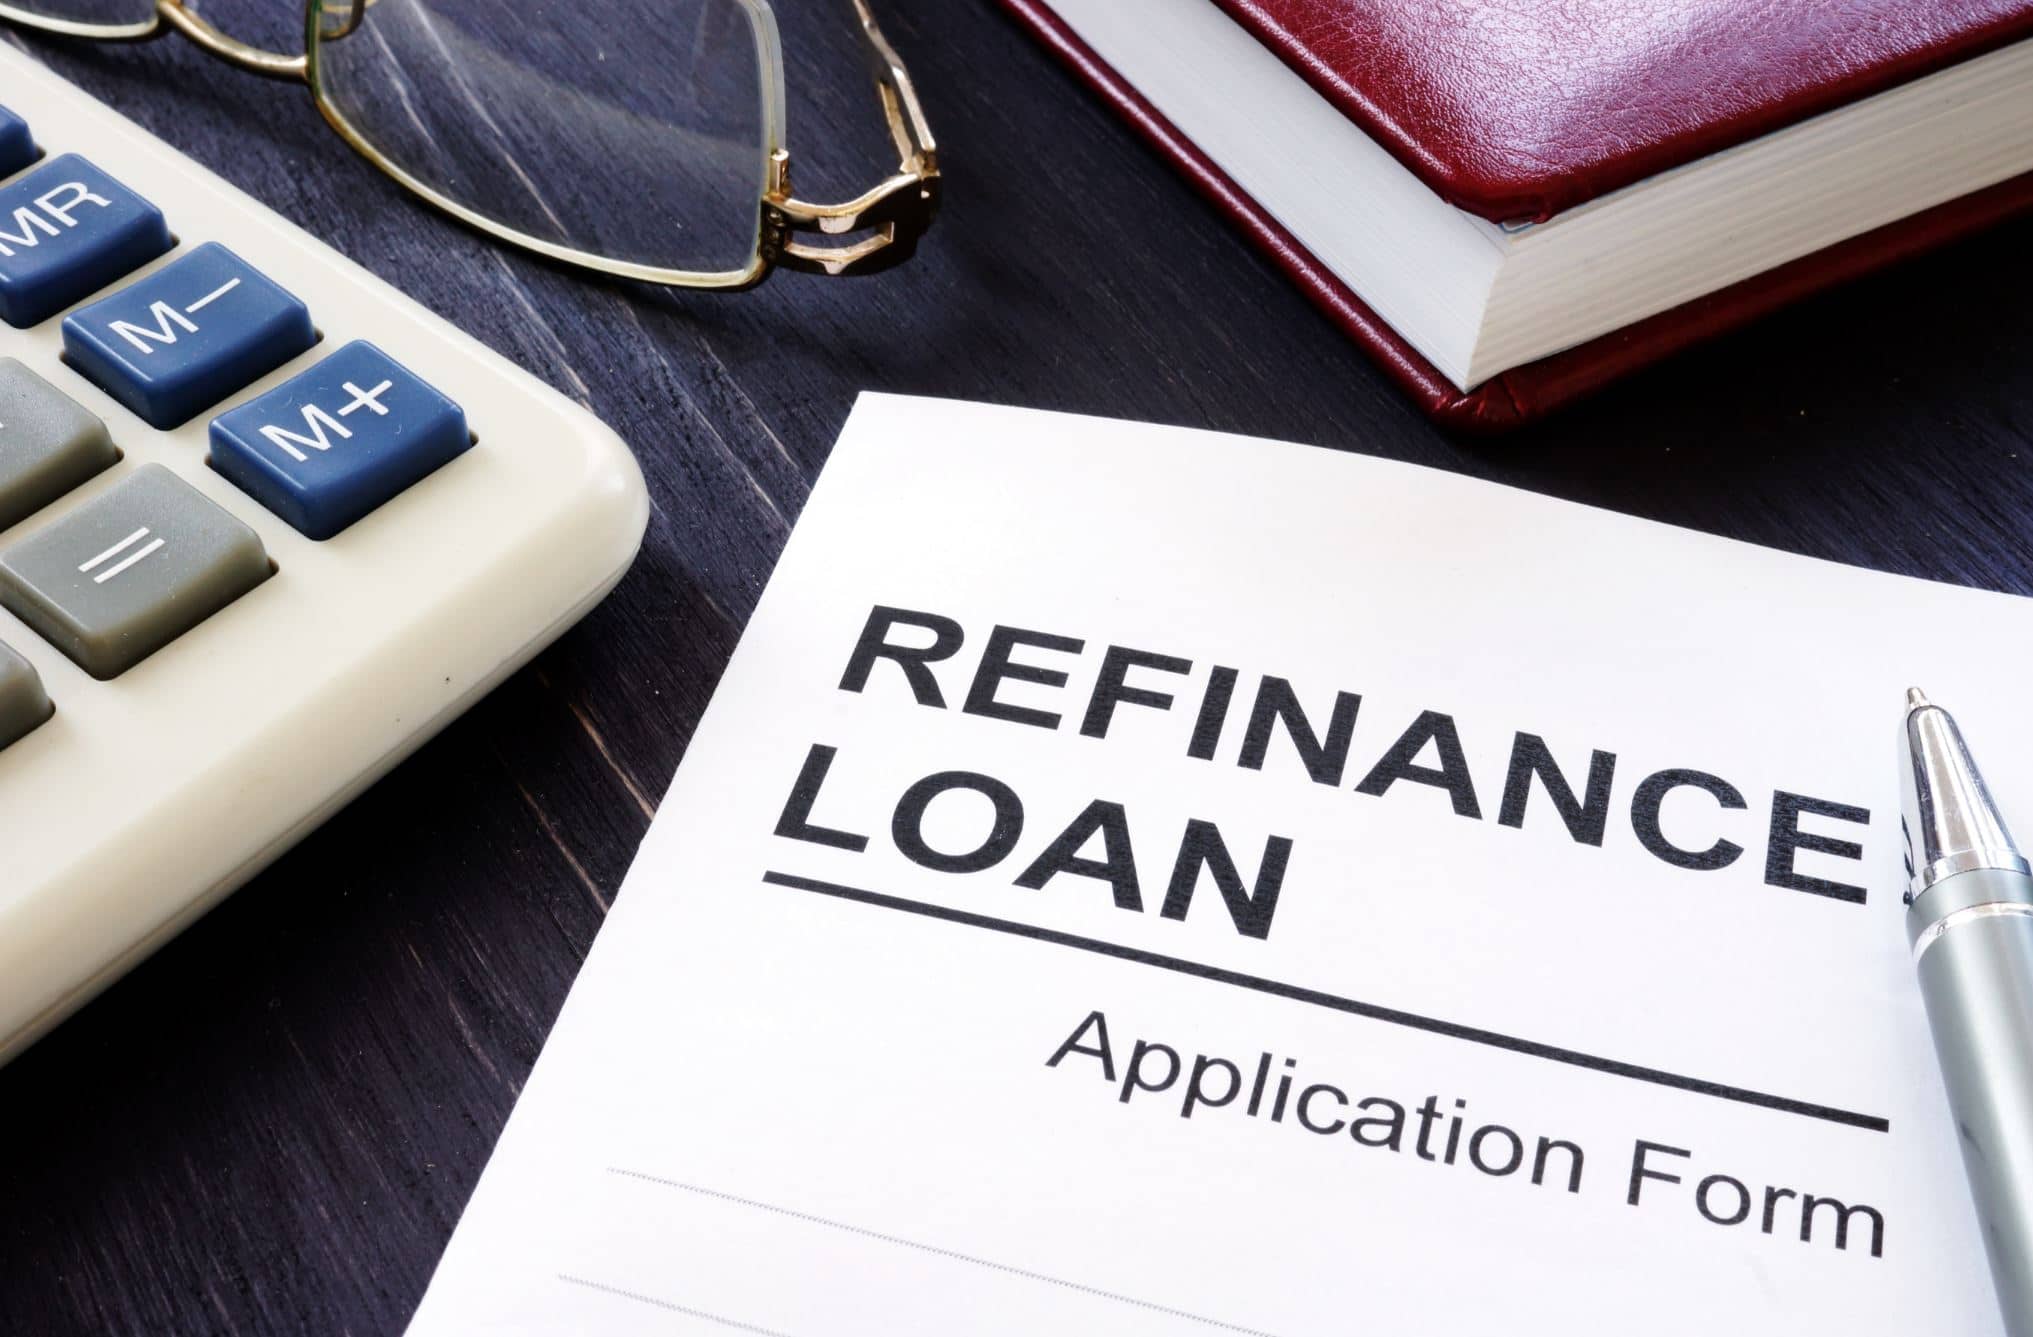 Refinance loan application form.